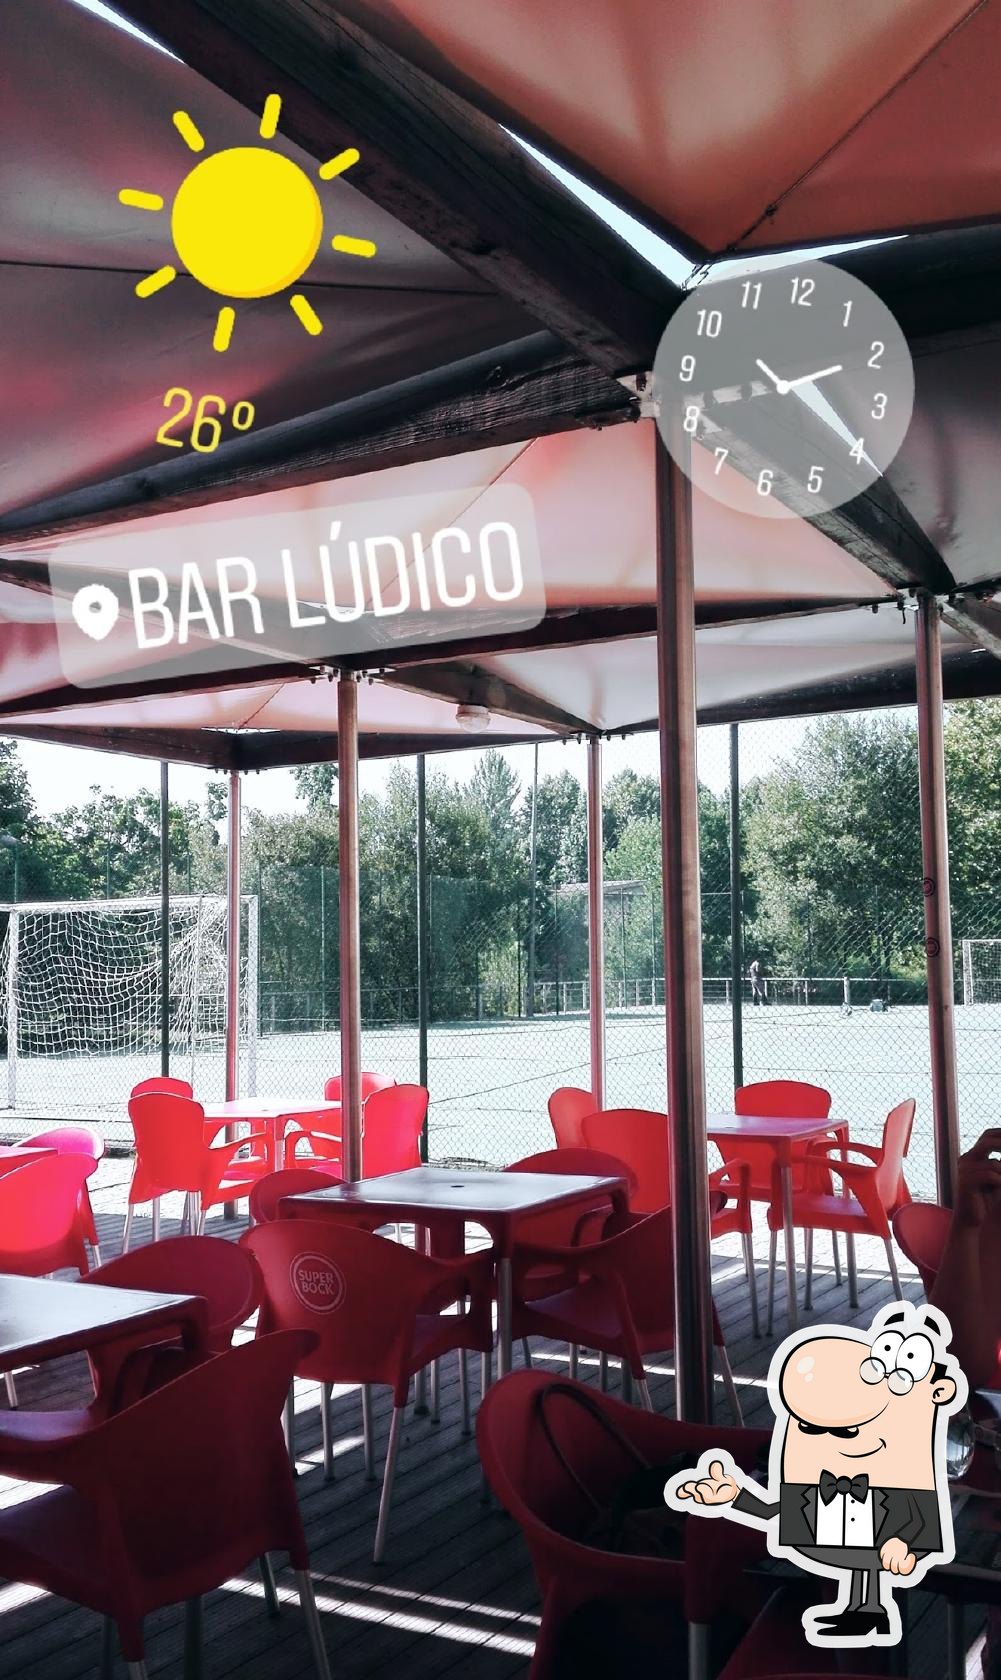 Bar Lúdico, Celorico de Basto - Restaurant menu and reviews